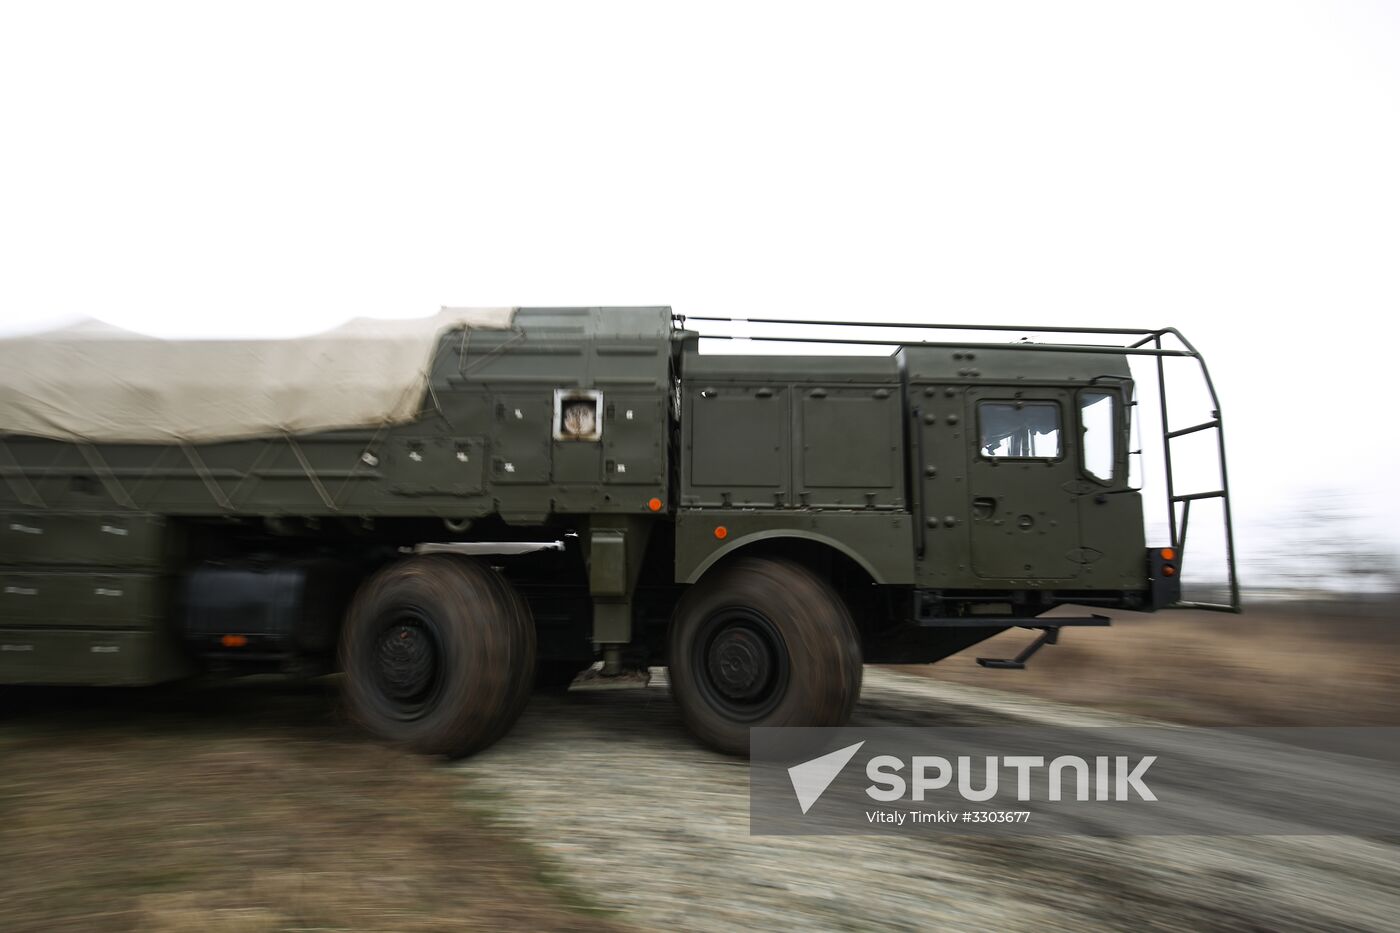 9K720 Iskander missile system drill in Krasnodar Territory